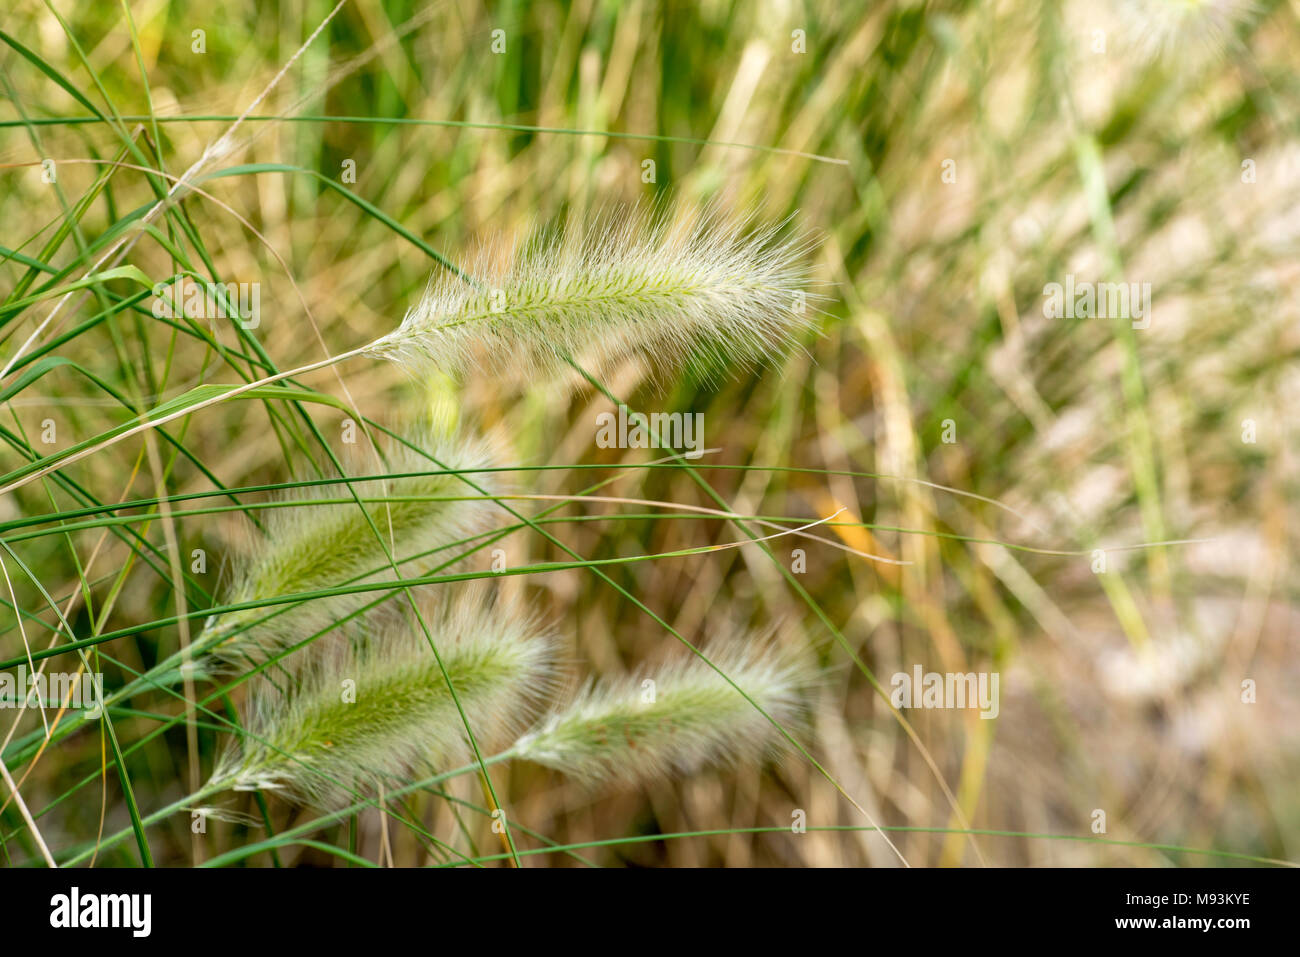 Pennisetum alopecuroides sometimes known as Pennstripe, an Australian    non-invasive grass Stock Photo